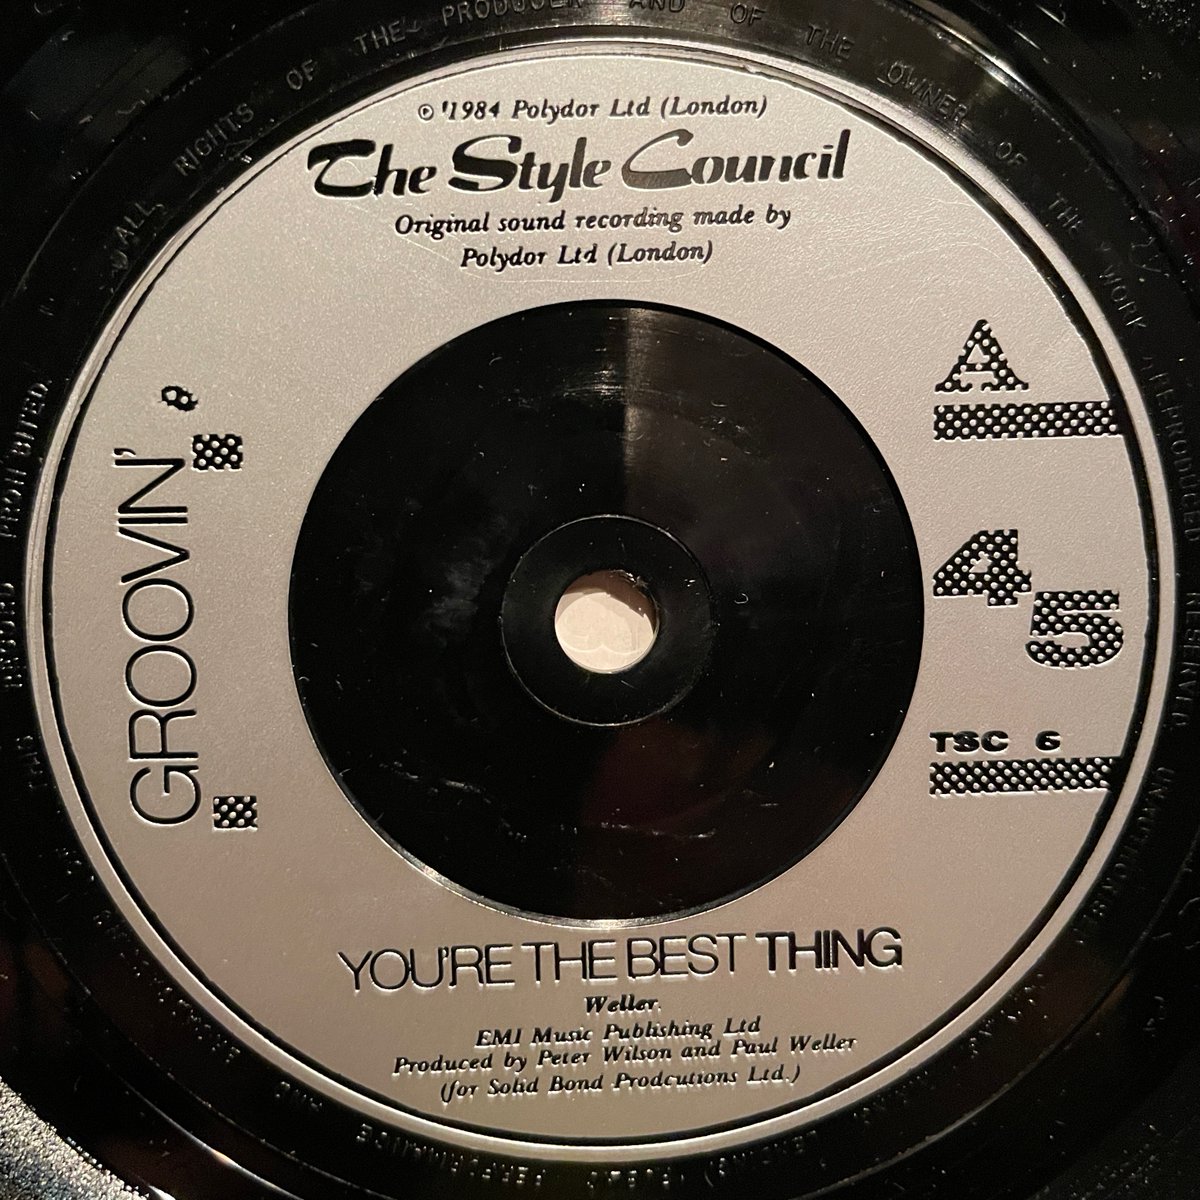 ほな7いこか
The Style Council / Groovin’ [18May1984, Polydor --- TSC 6]
#OnThisDate #TheStyleCouncil #YoureTheBestThing #TheBigBossGroove #PaulWeller #MickTalbot #SteveWhite #PeterWilson #listeningbar #vinylbar #musicbar #レコードバー #mhc18052024
youtube.com/watch?v=0HMAVU…